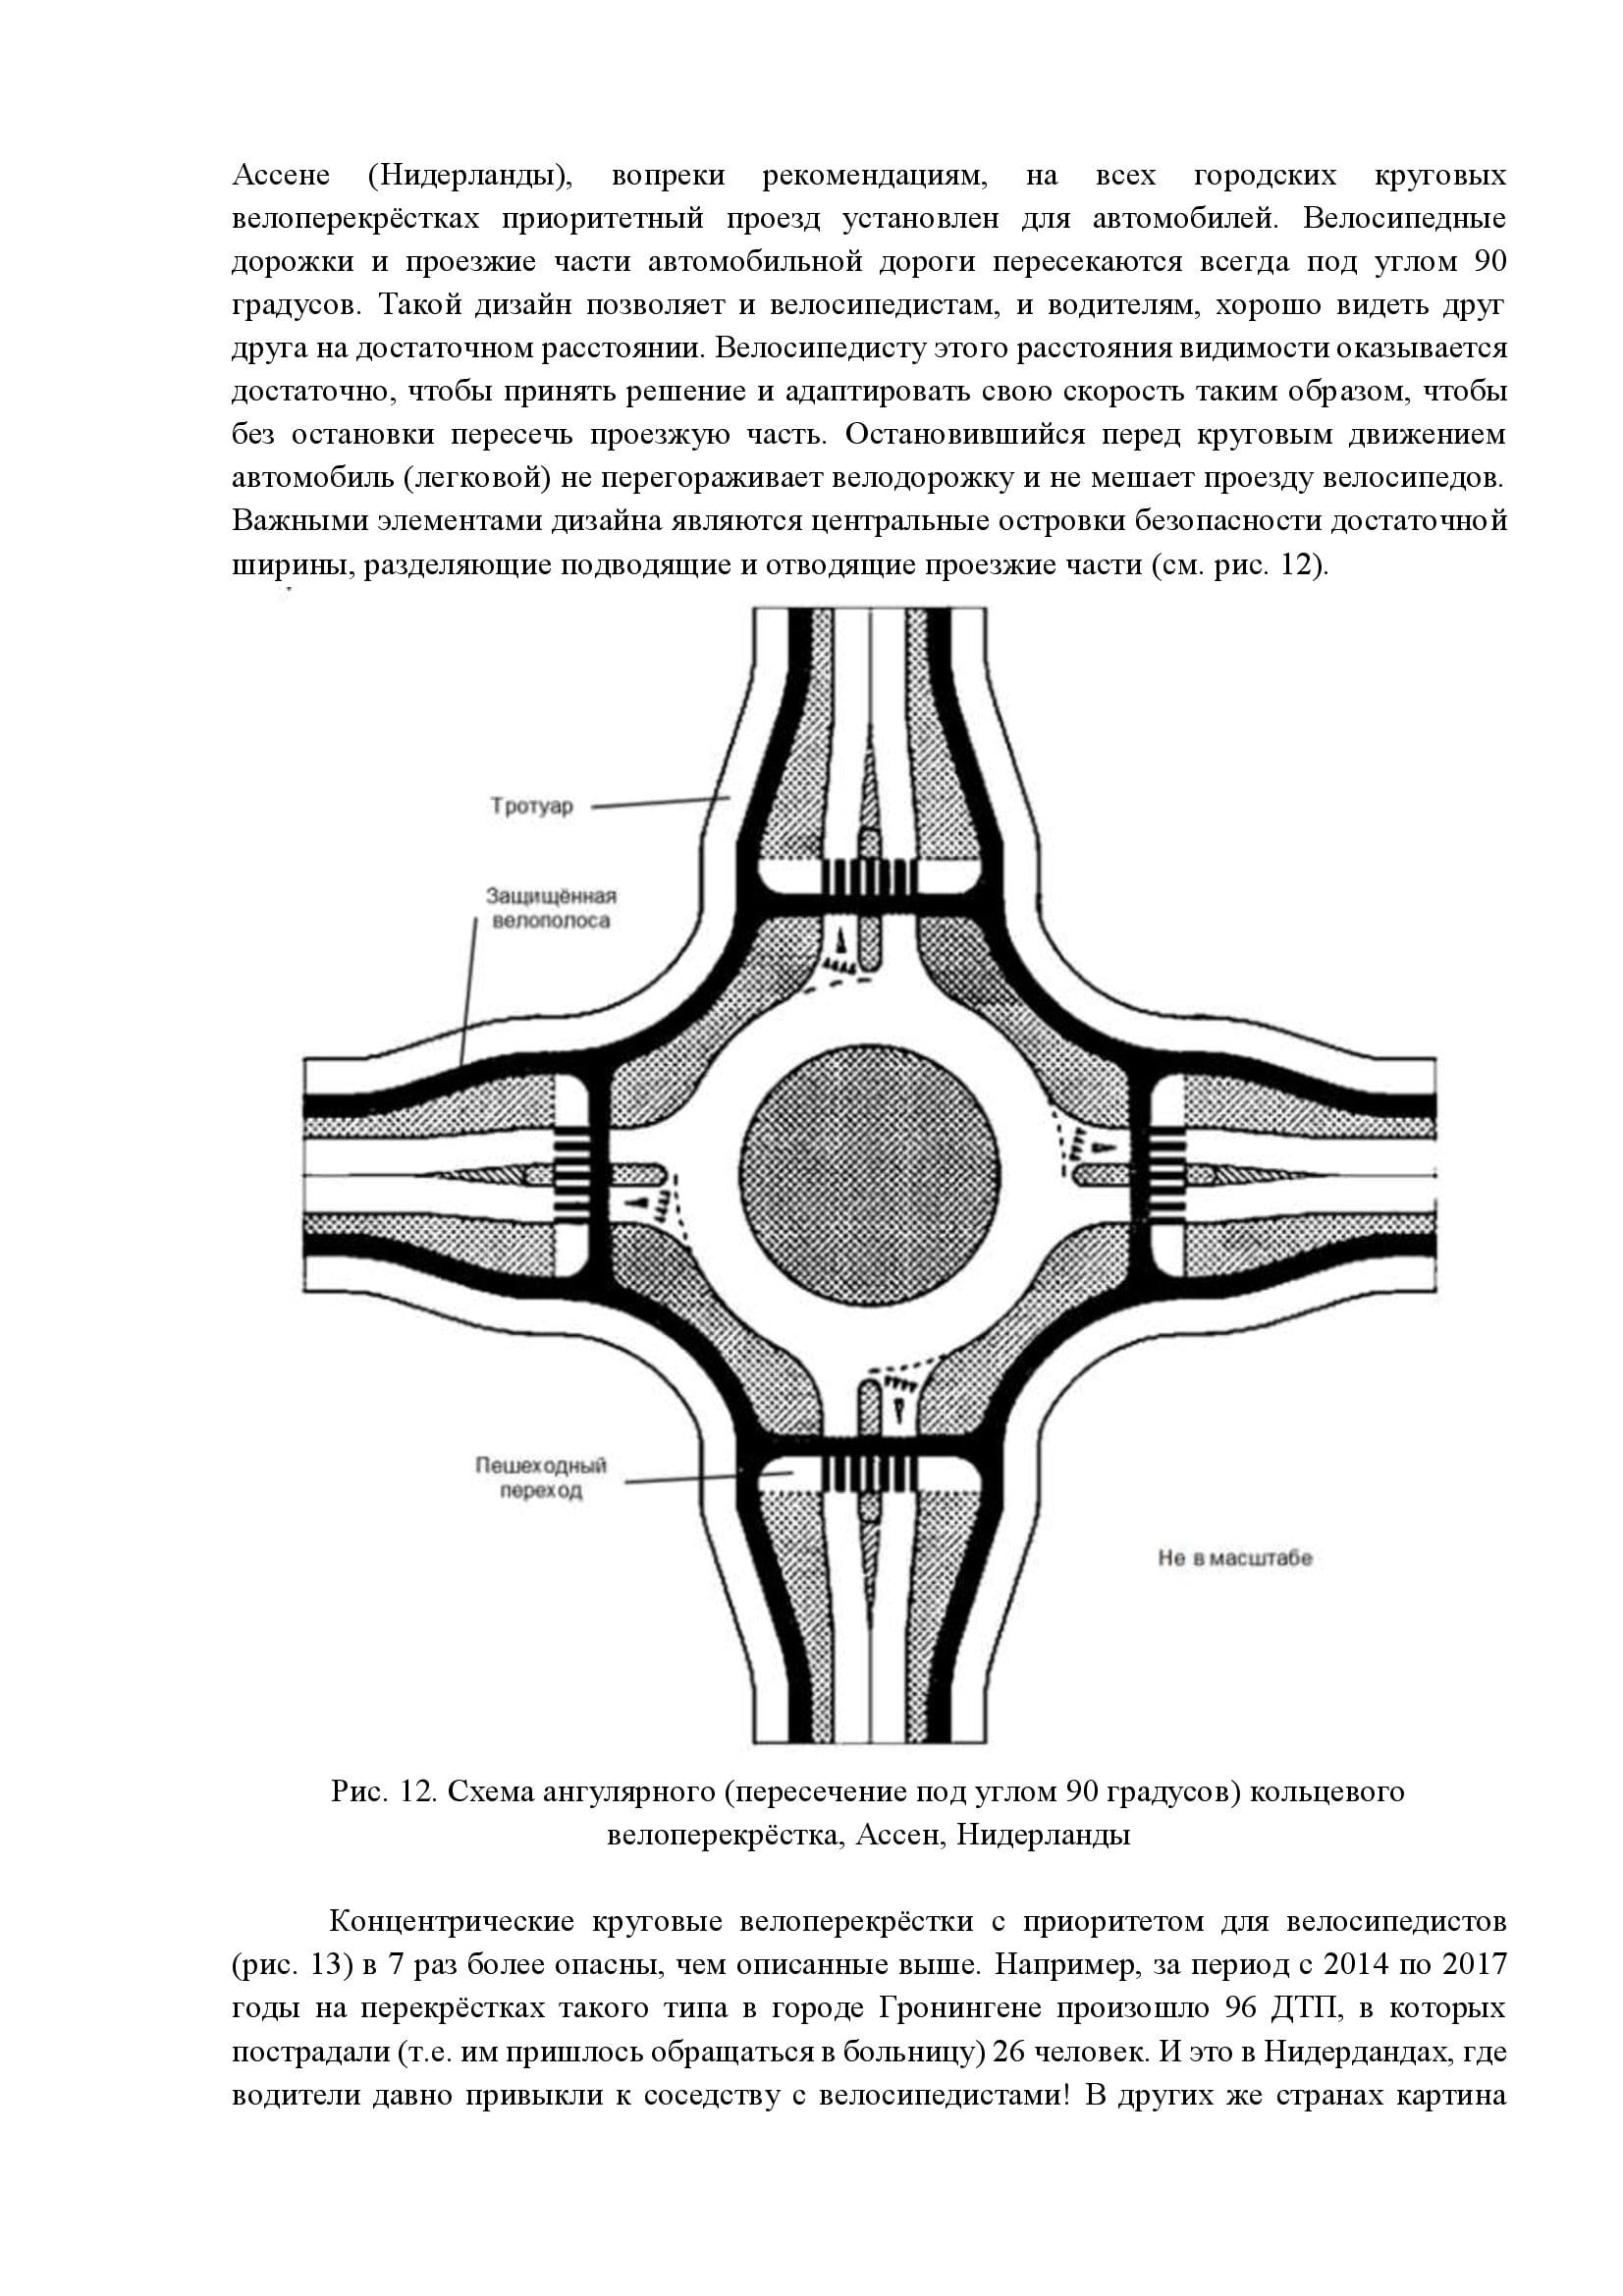 Дизайн элементов инфраструктуры для немоторизованной мобильности - фото 15